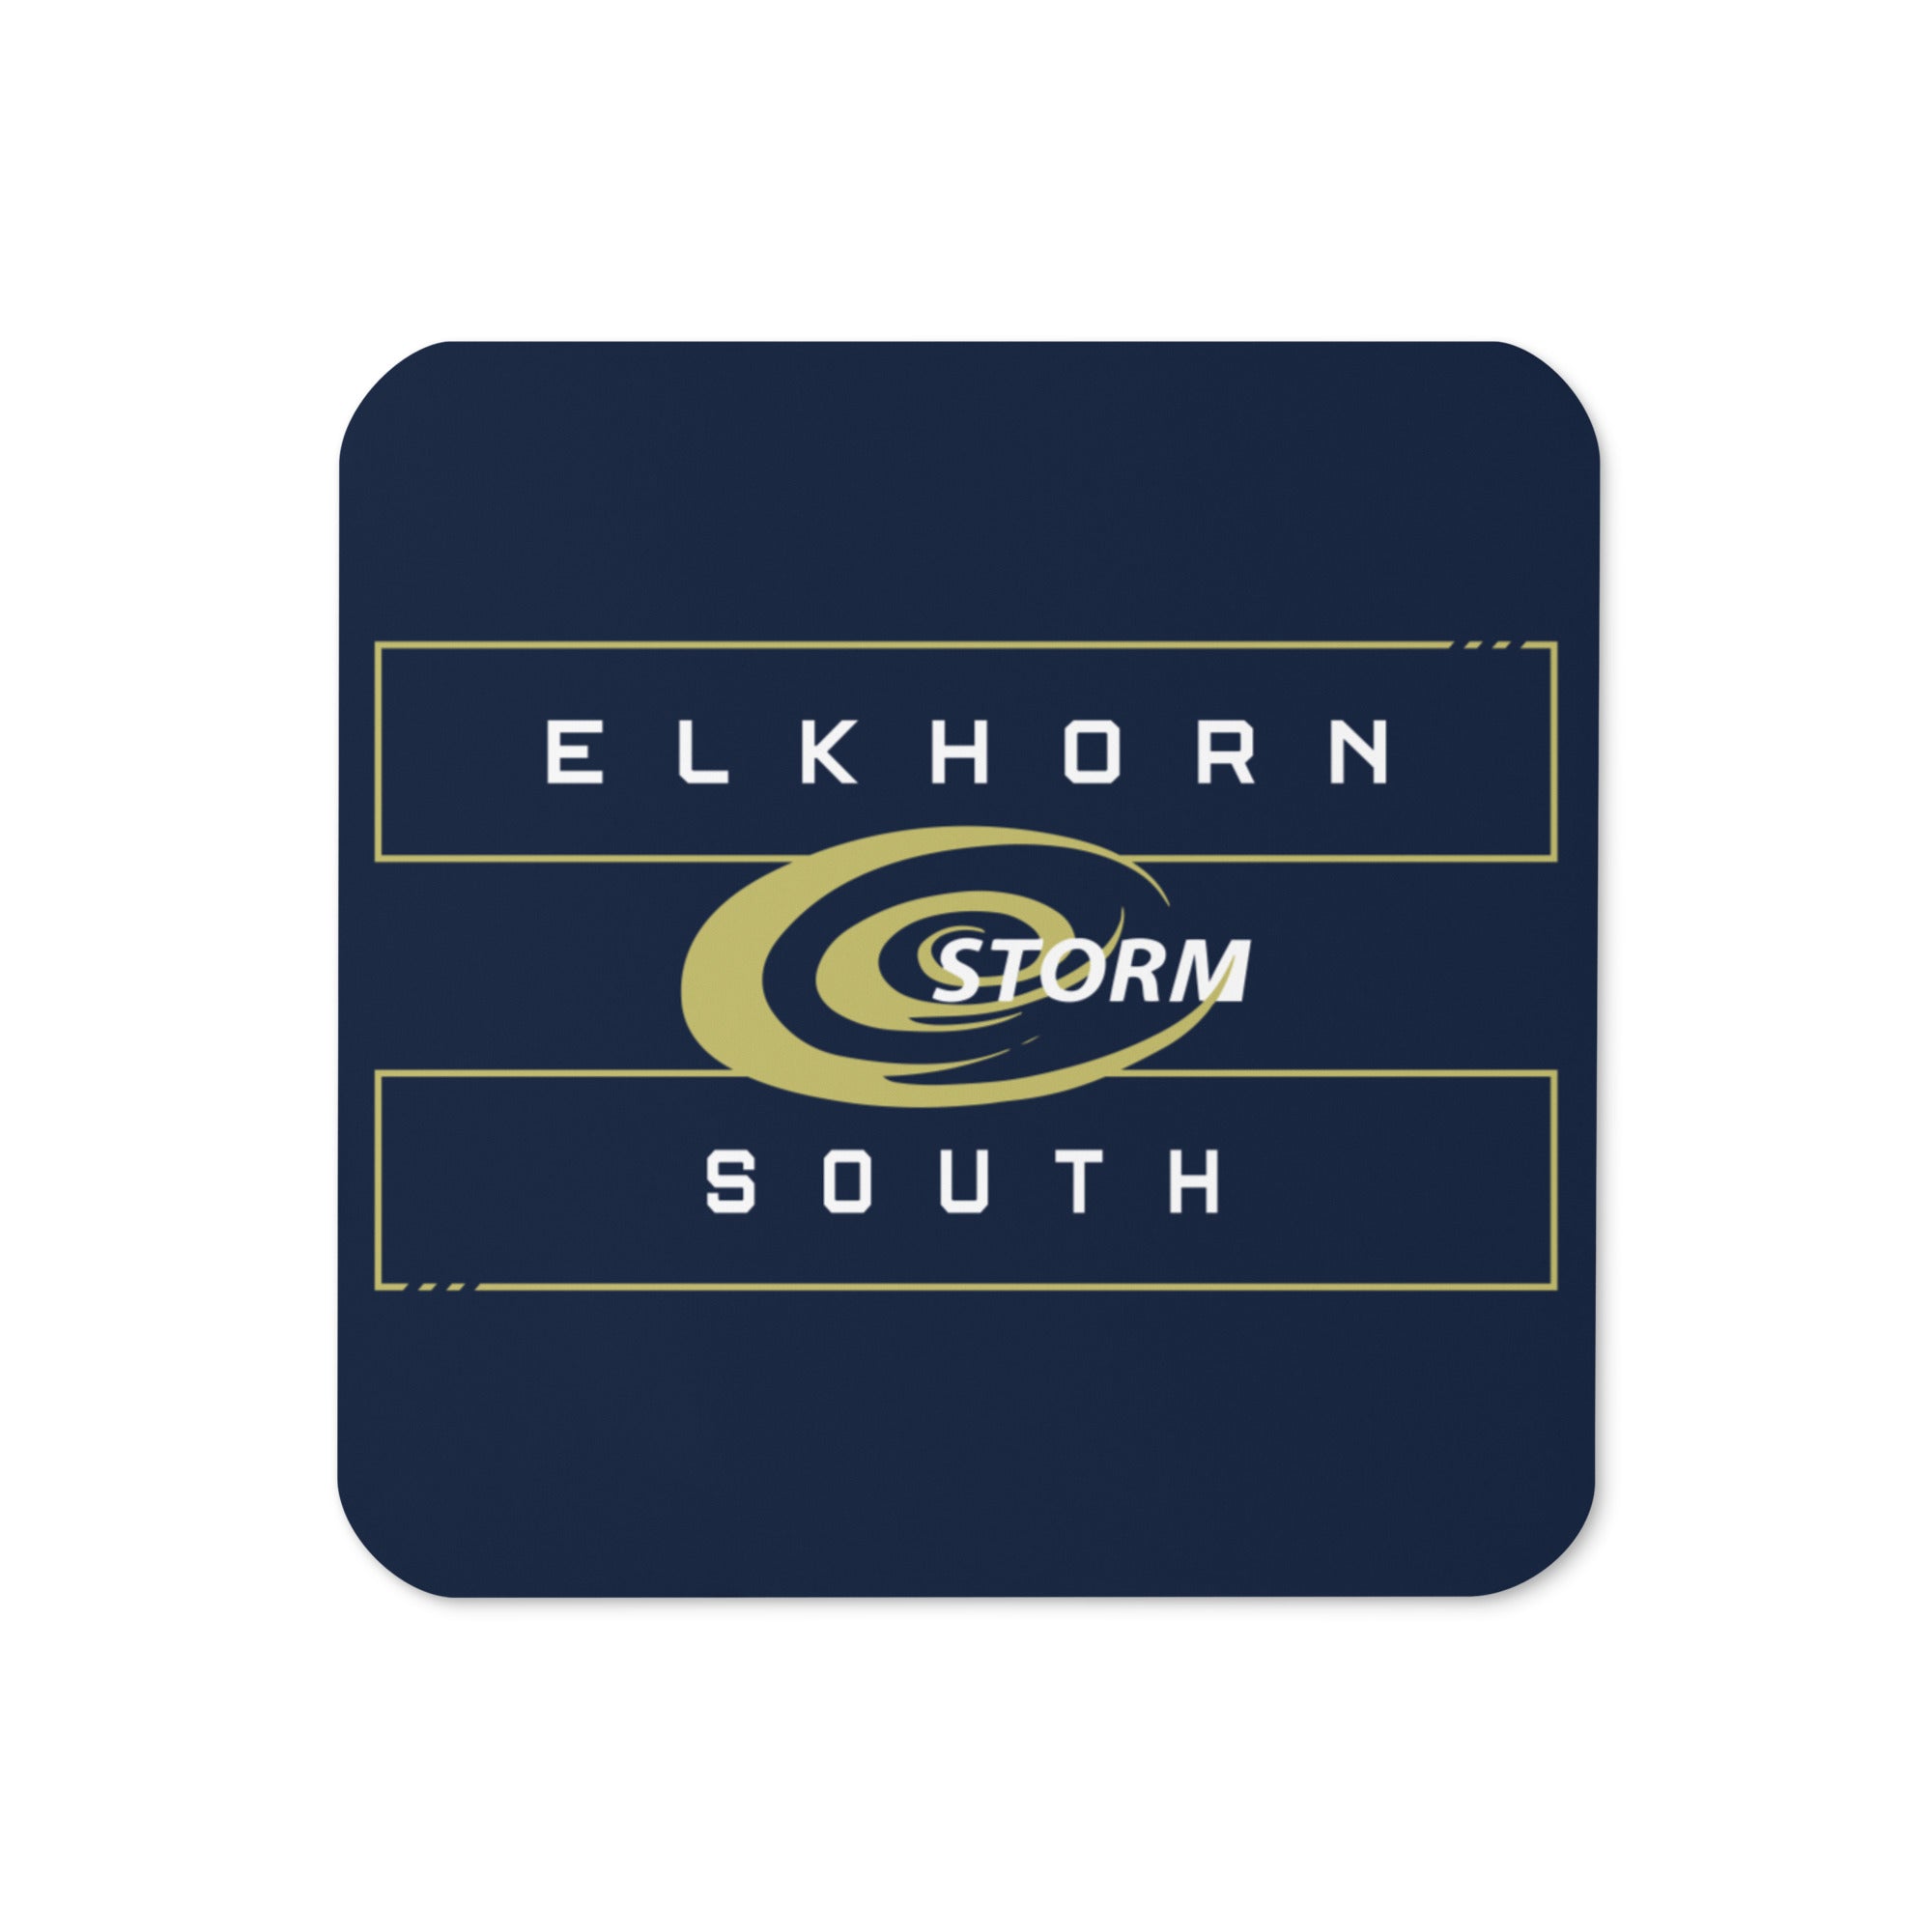 Elkhorn South Storm Cork Back Coaster